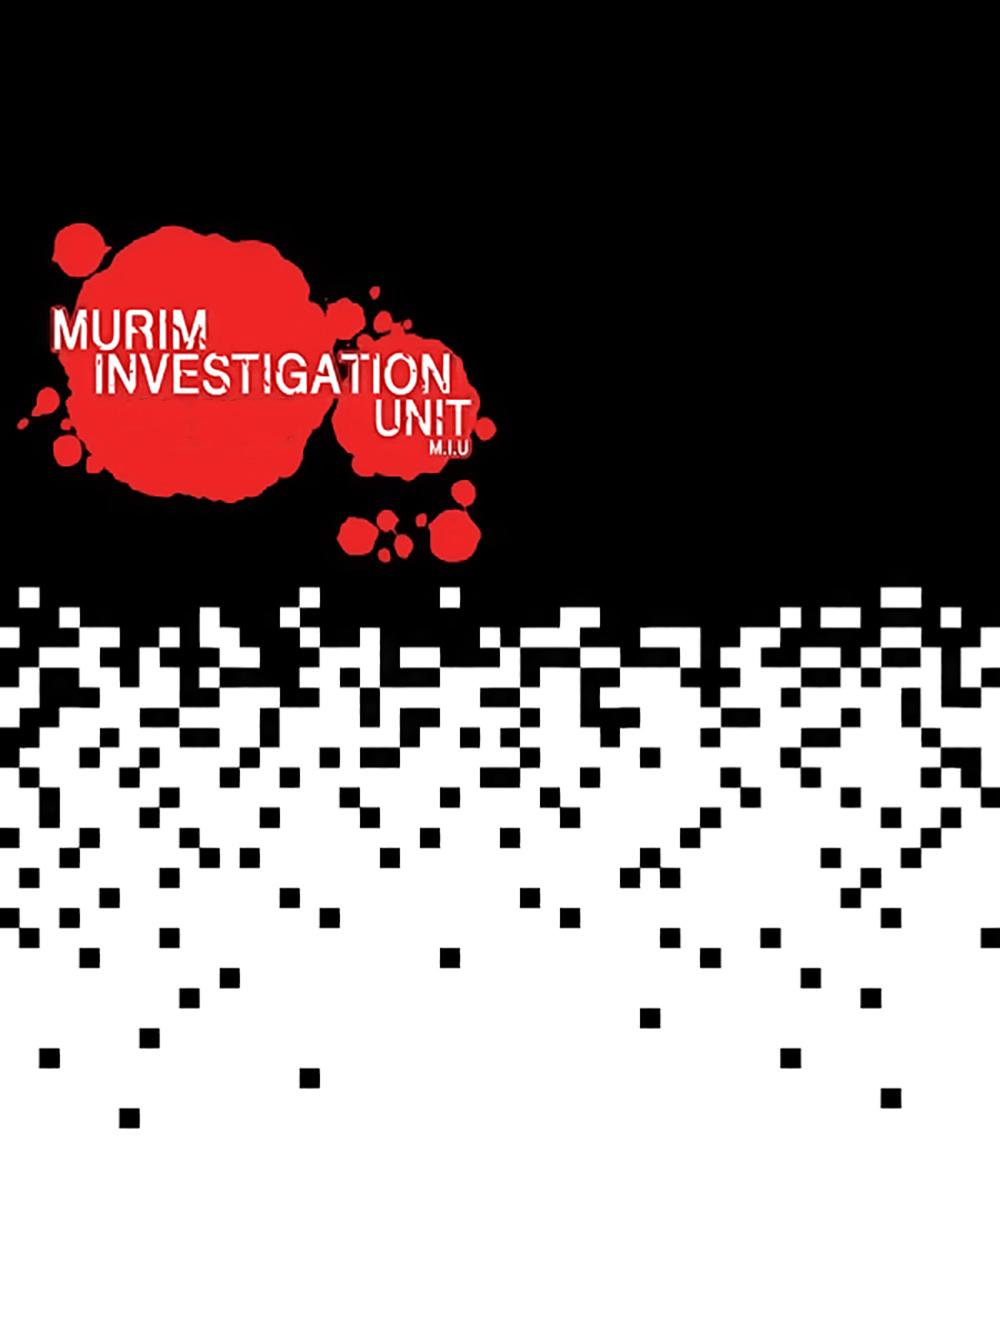 Đơn Vị Điều Tra Võ Lâm - Murim Investigation Unit